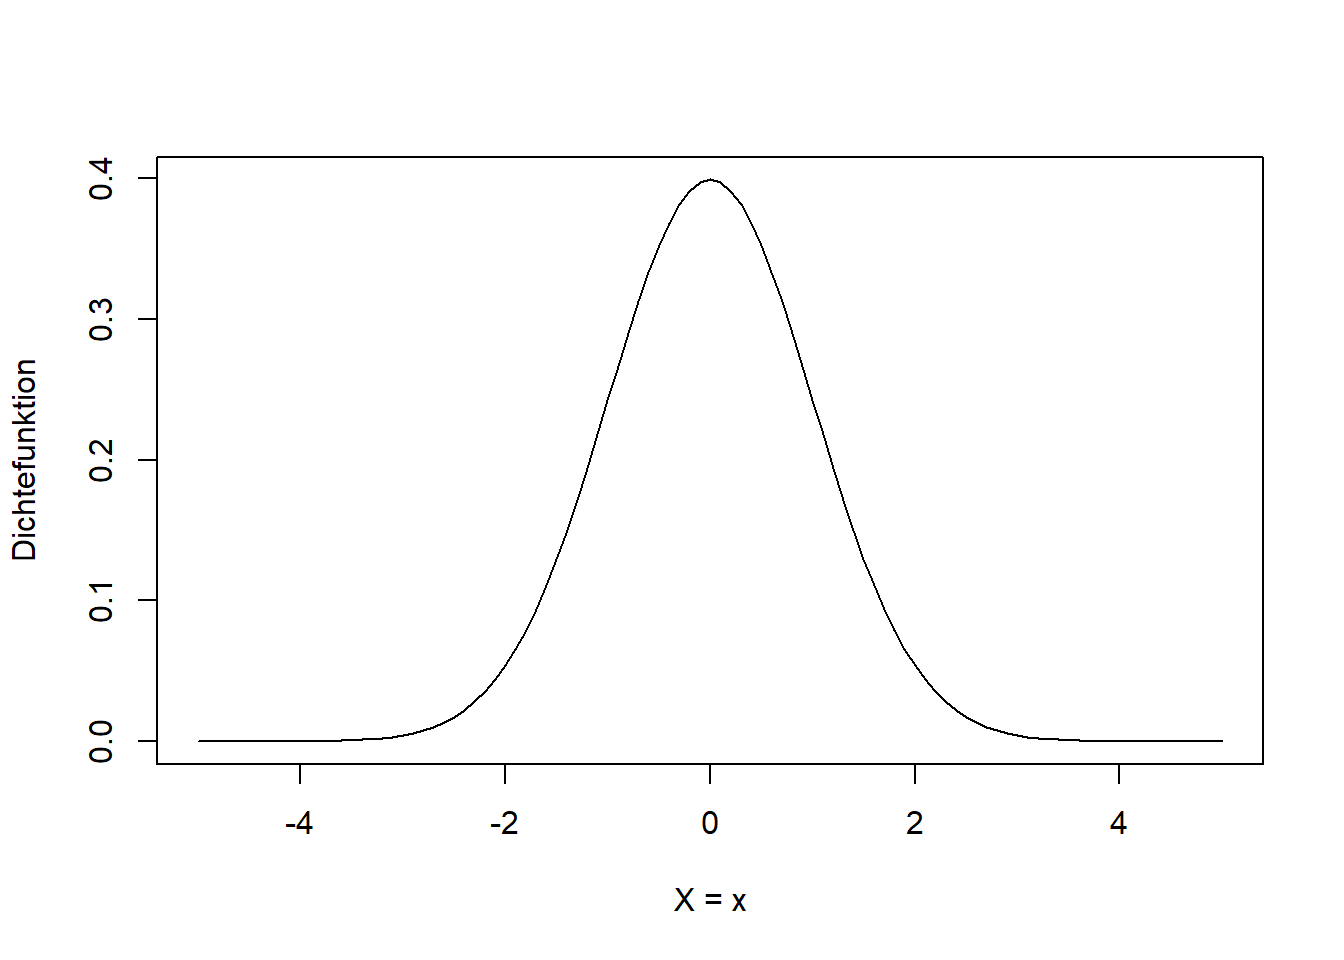 Form der Dichtefunktion der Normalverteilung einer beliebigen Zufallsvariable $X$. Hier ist die **Standardnormalverteilung** $N(0,1)$ dargestellt, mit Mittelwert $\mu=0$ und Standardabweichung $\sigma=1$.